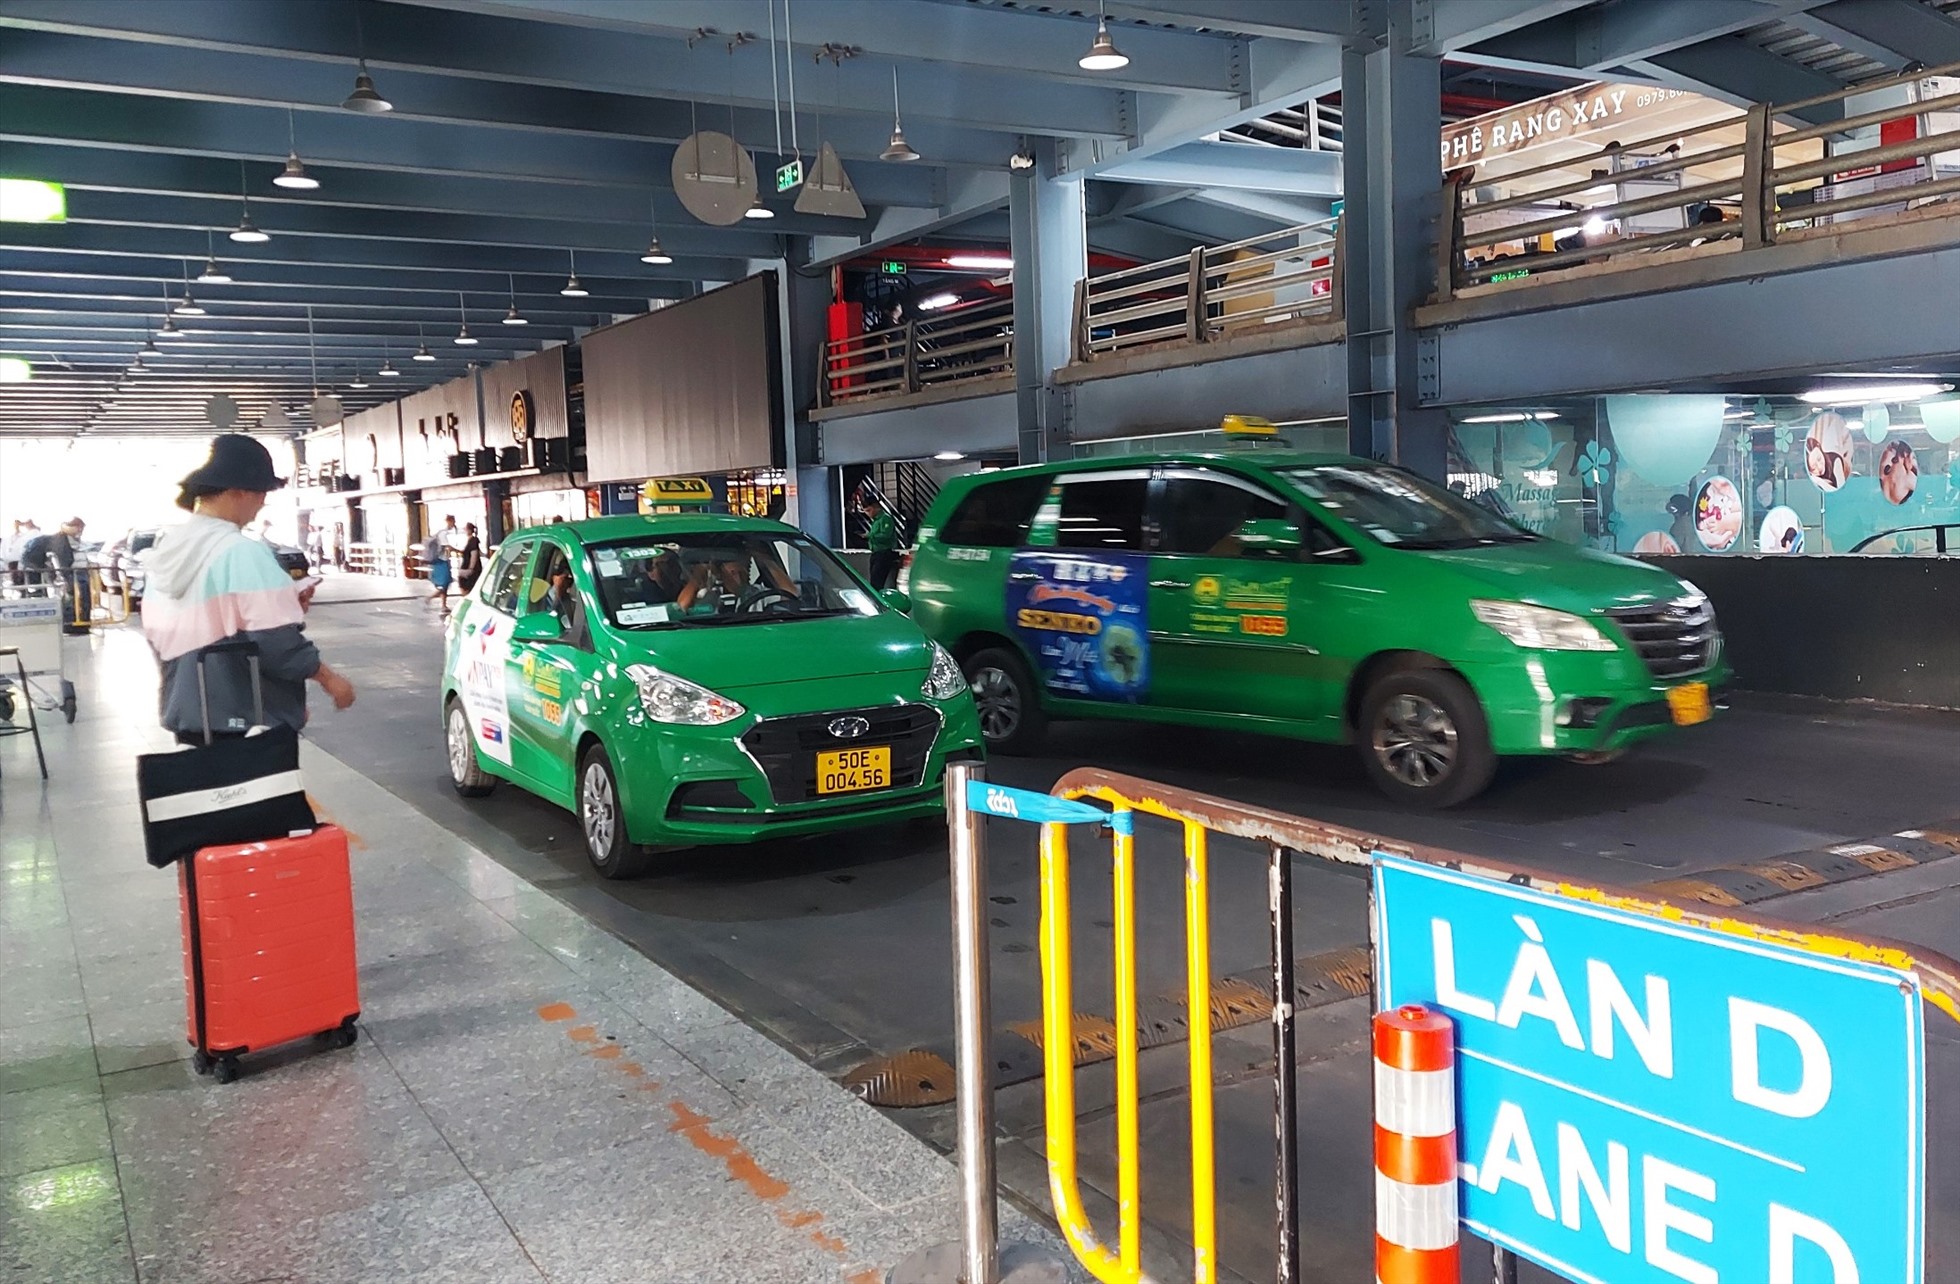 Bảng giá cước taxi sân bay Nội Bài